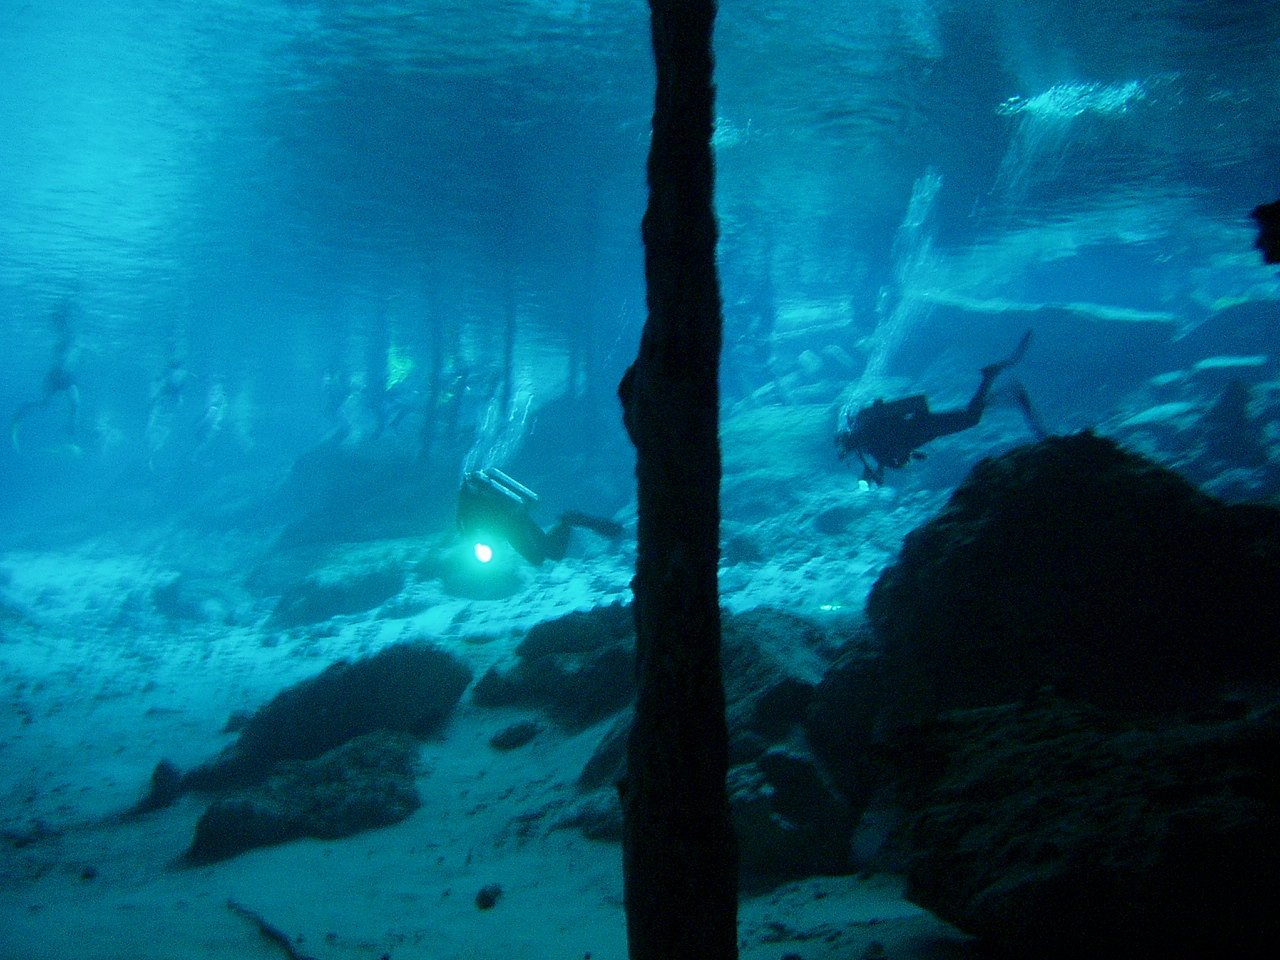 divers underwater using strobe lights